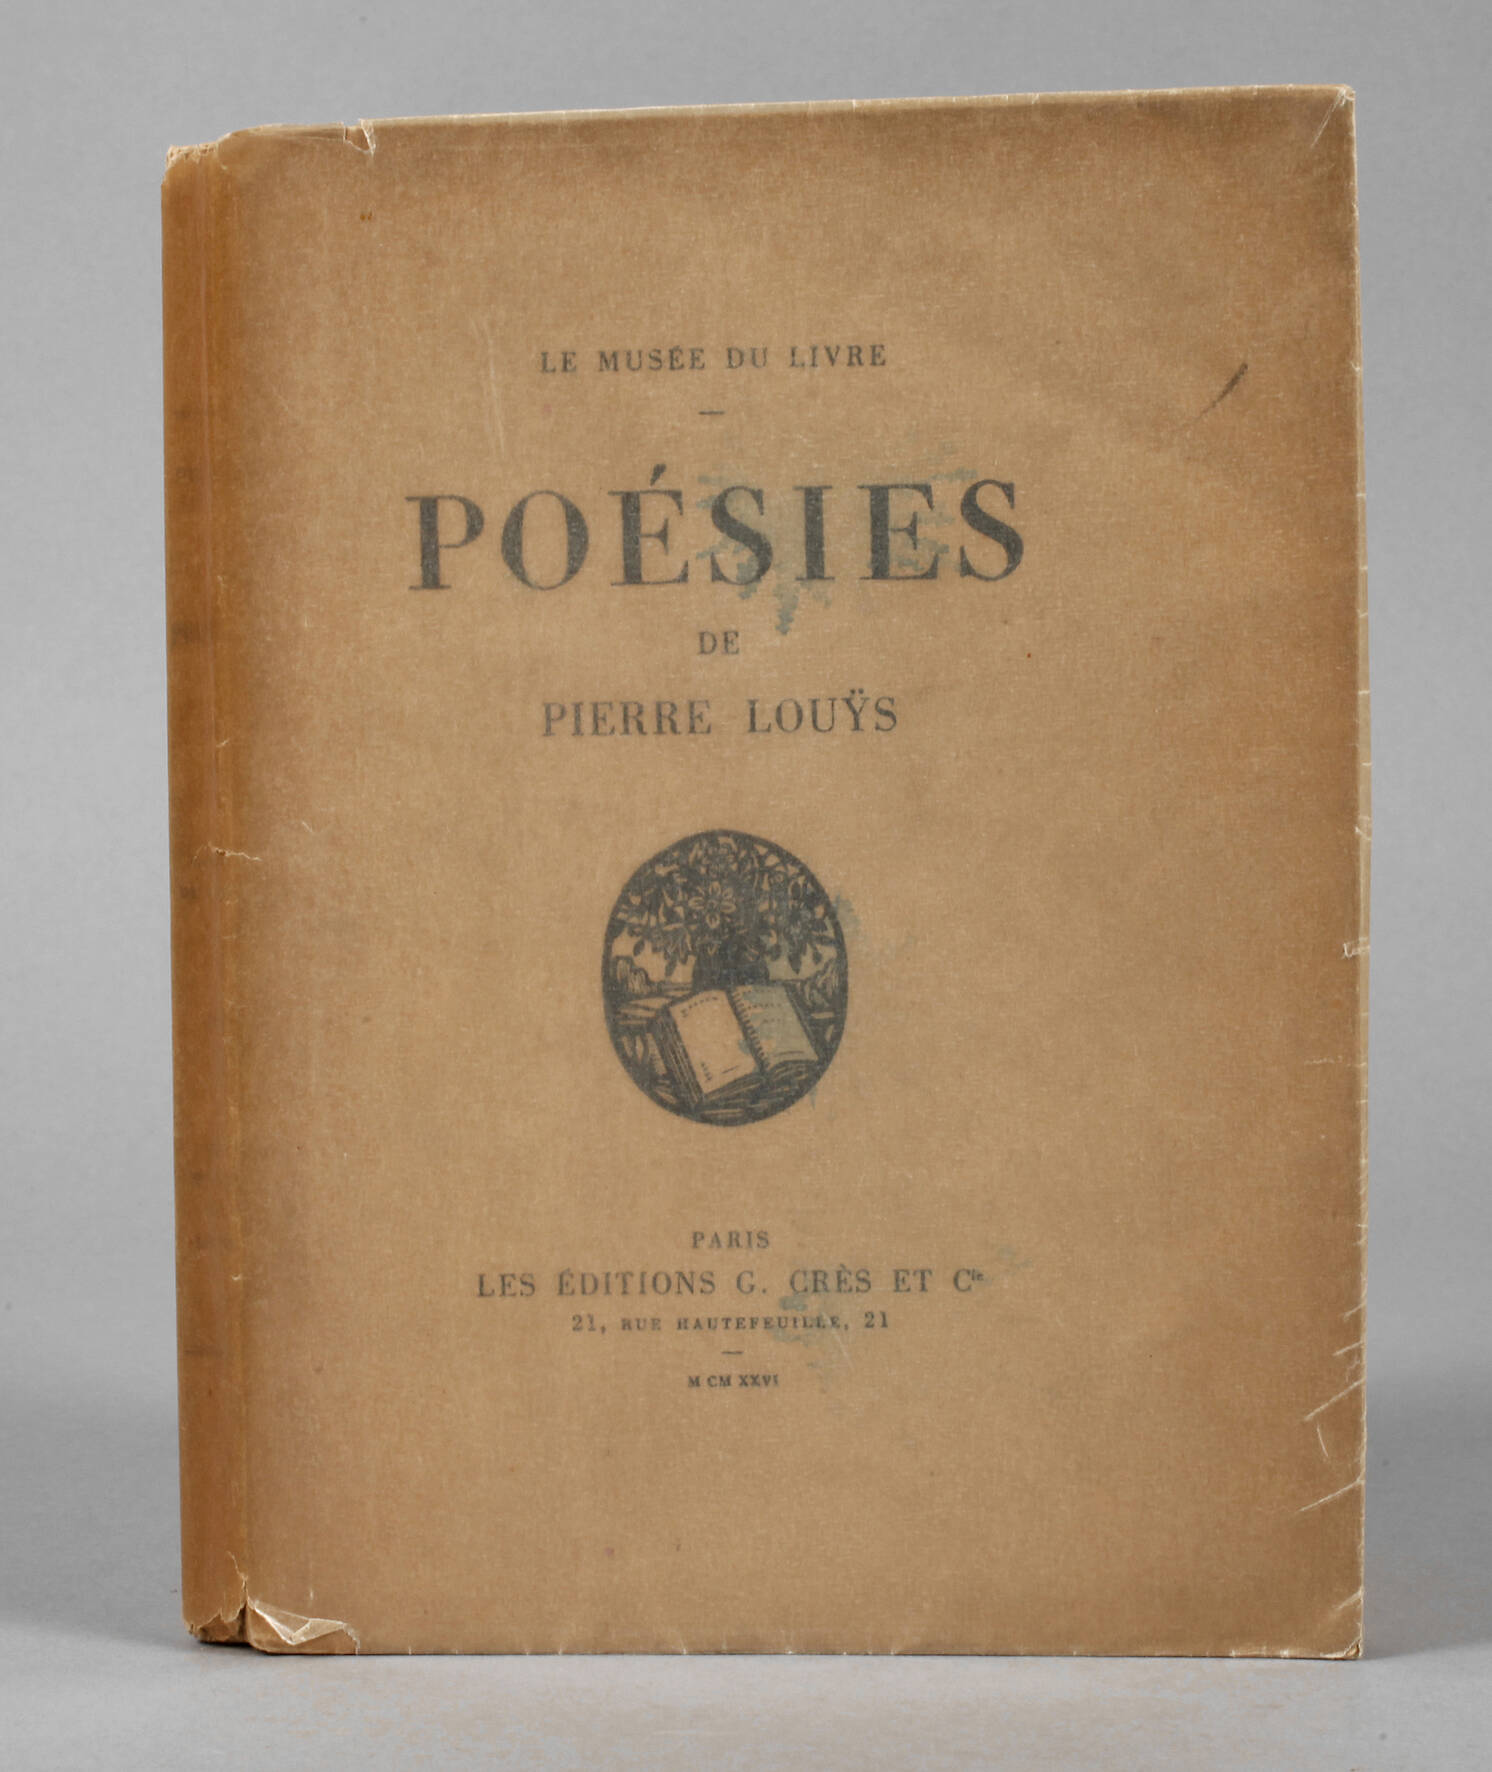 Pierre Louys, Poésies